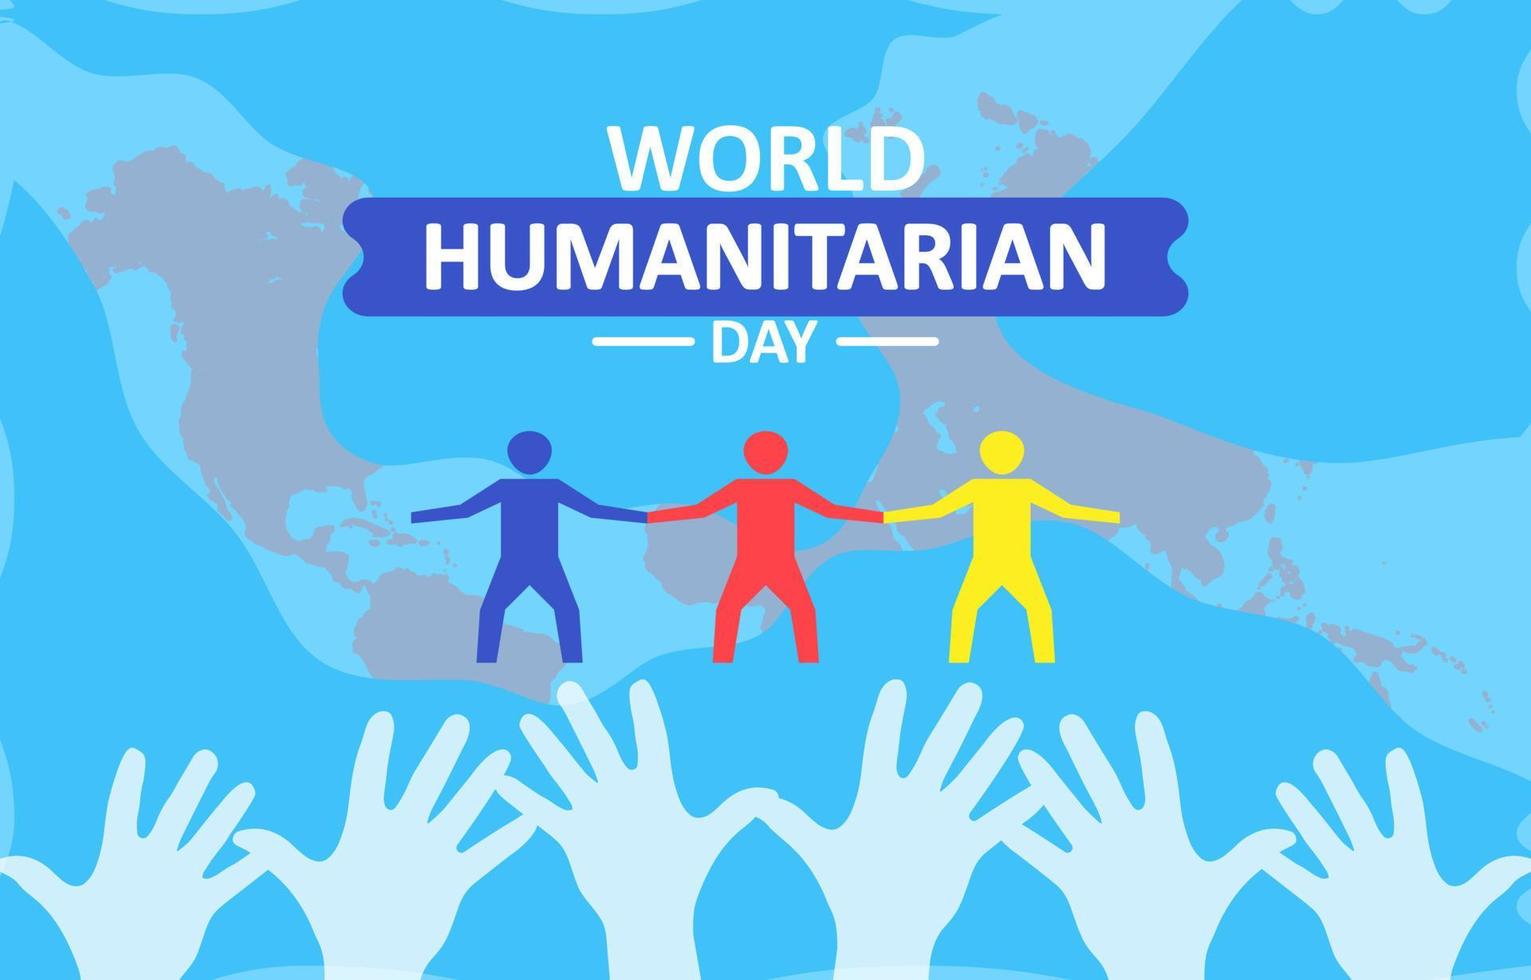 ilustración de diseño plano de la plantilla del día mundial humanitario, diseño adecuado para carteles, fondos, tarjetas de felicitación, tema del día mundial humanitario vector